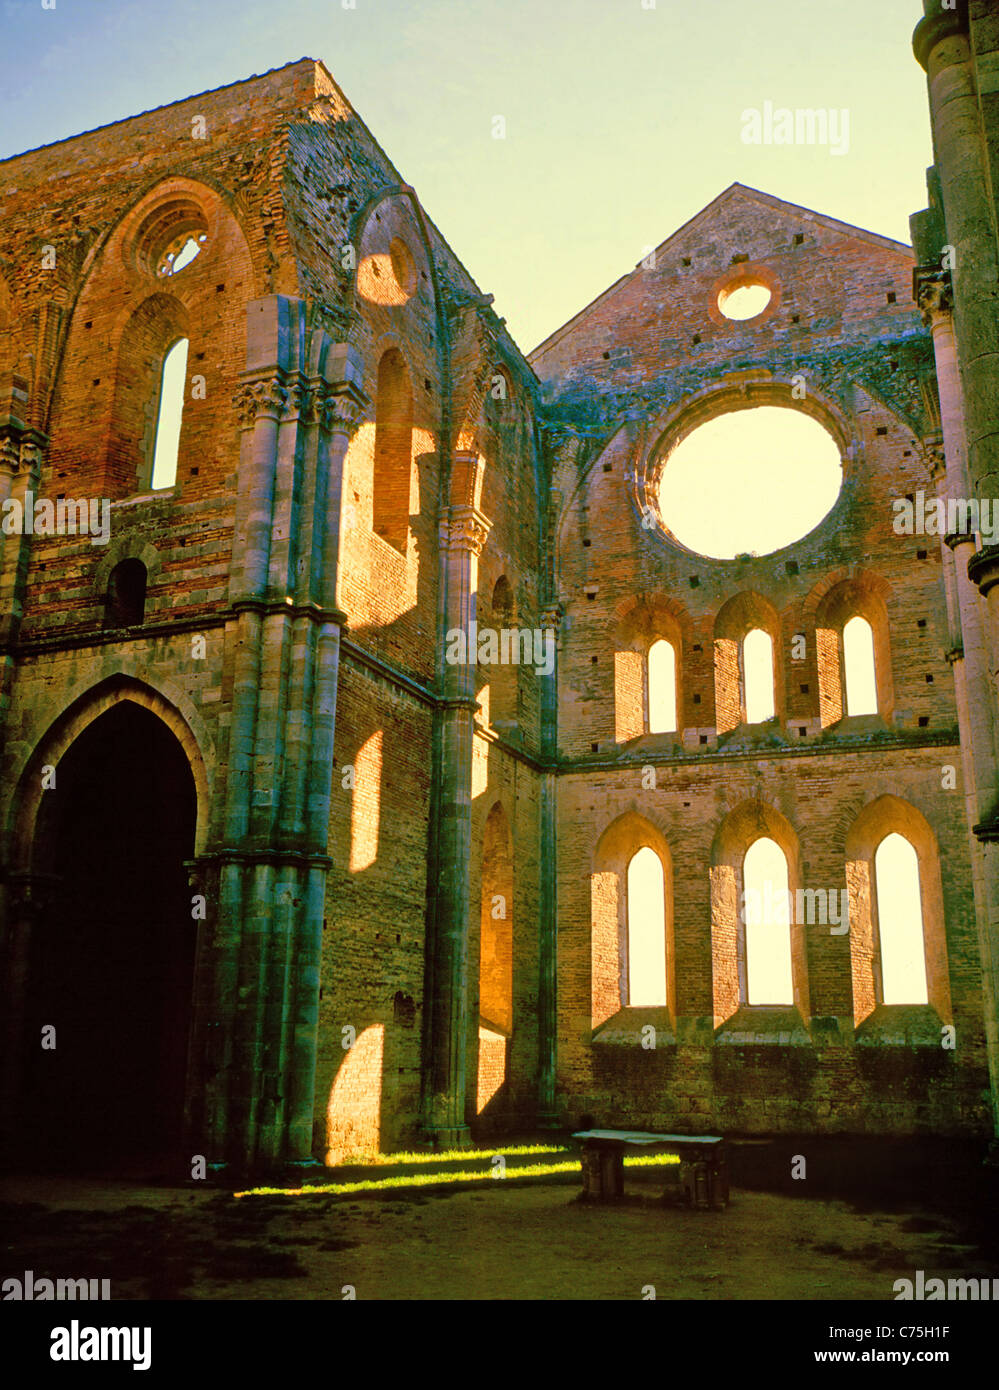 Gothic abbey of San Galgano at Montesiepi, about 19 miles (30 km) southwest of Siena. Stock Photo